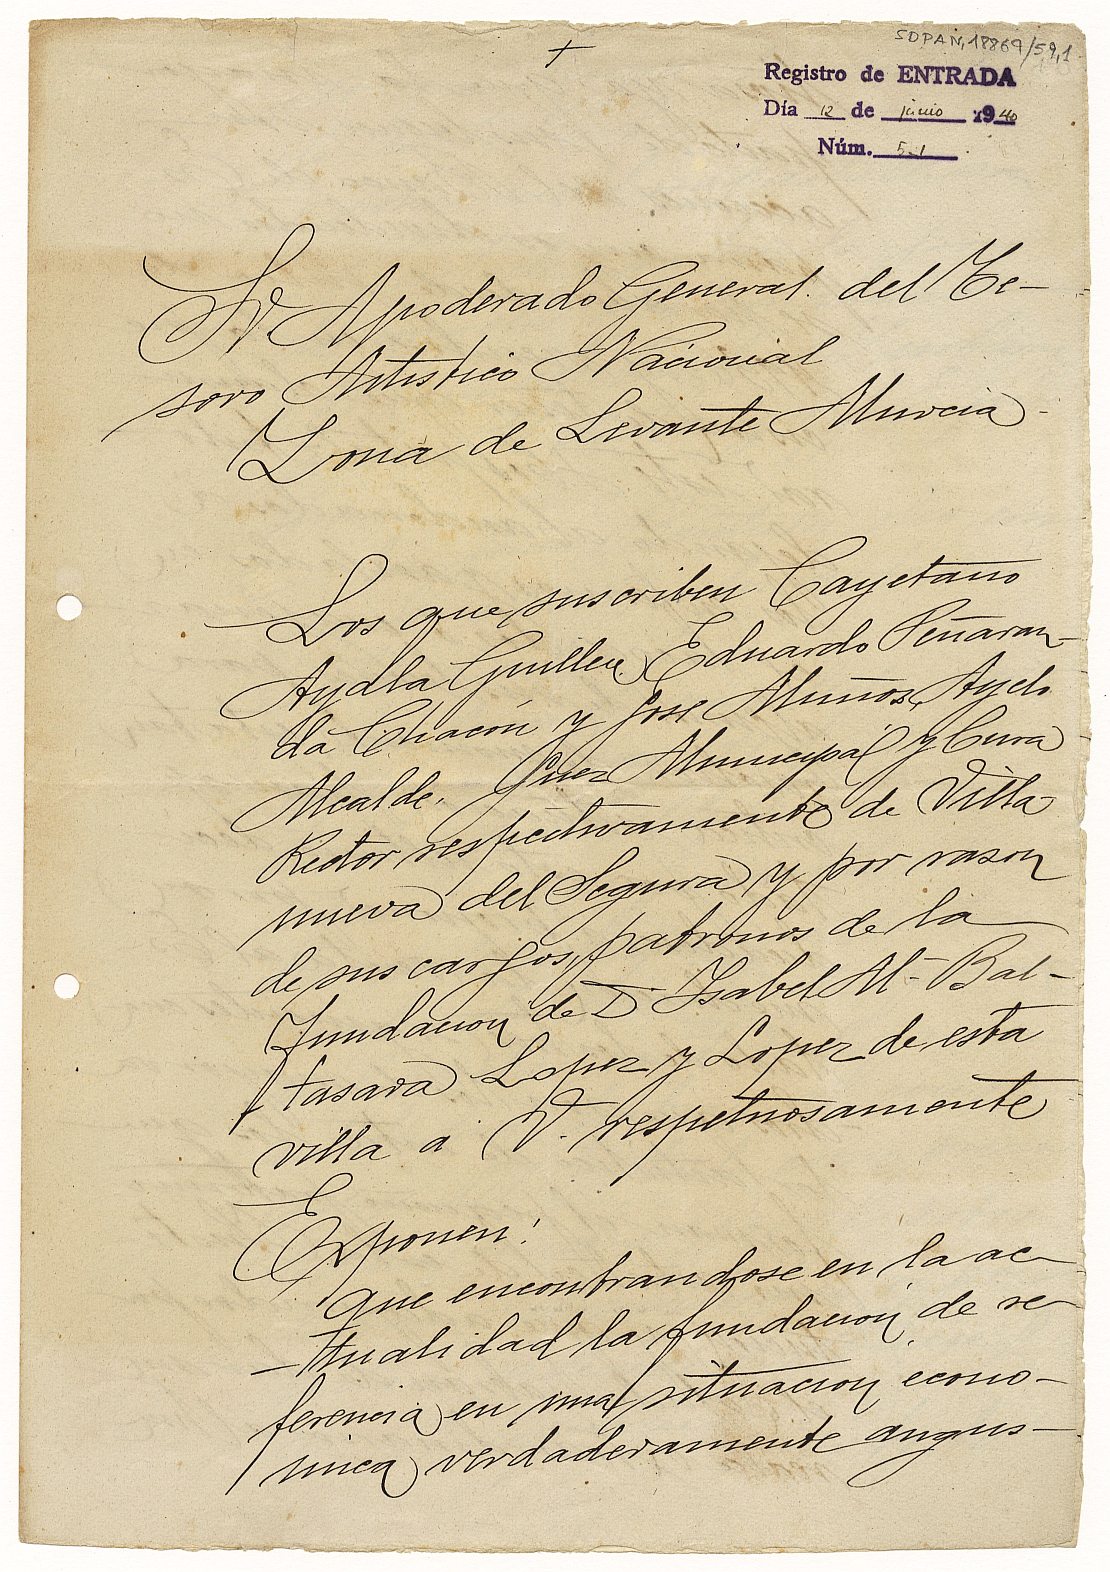 Dosier sobre los trámites realizados para la venta al Estado de tres cuadros pertenecientes a la fundación de Isabel López López.